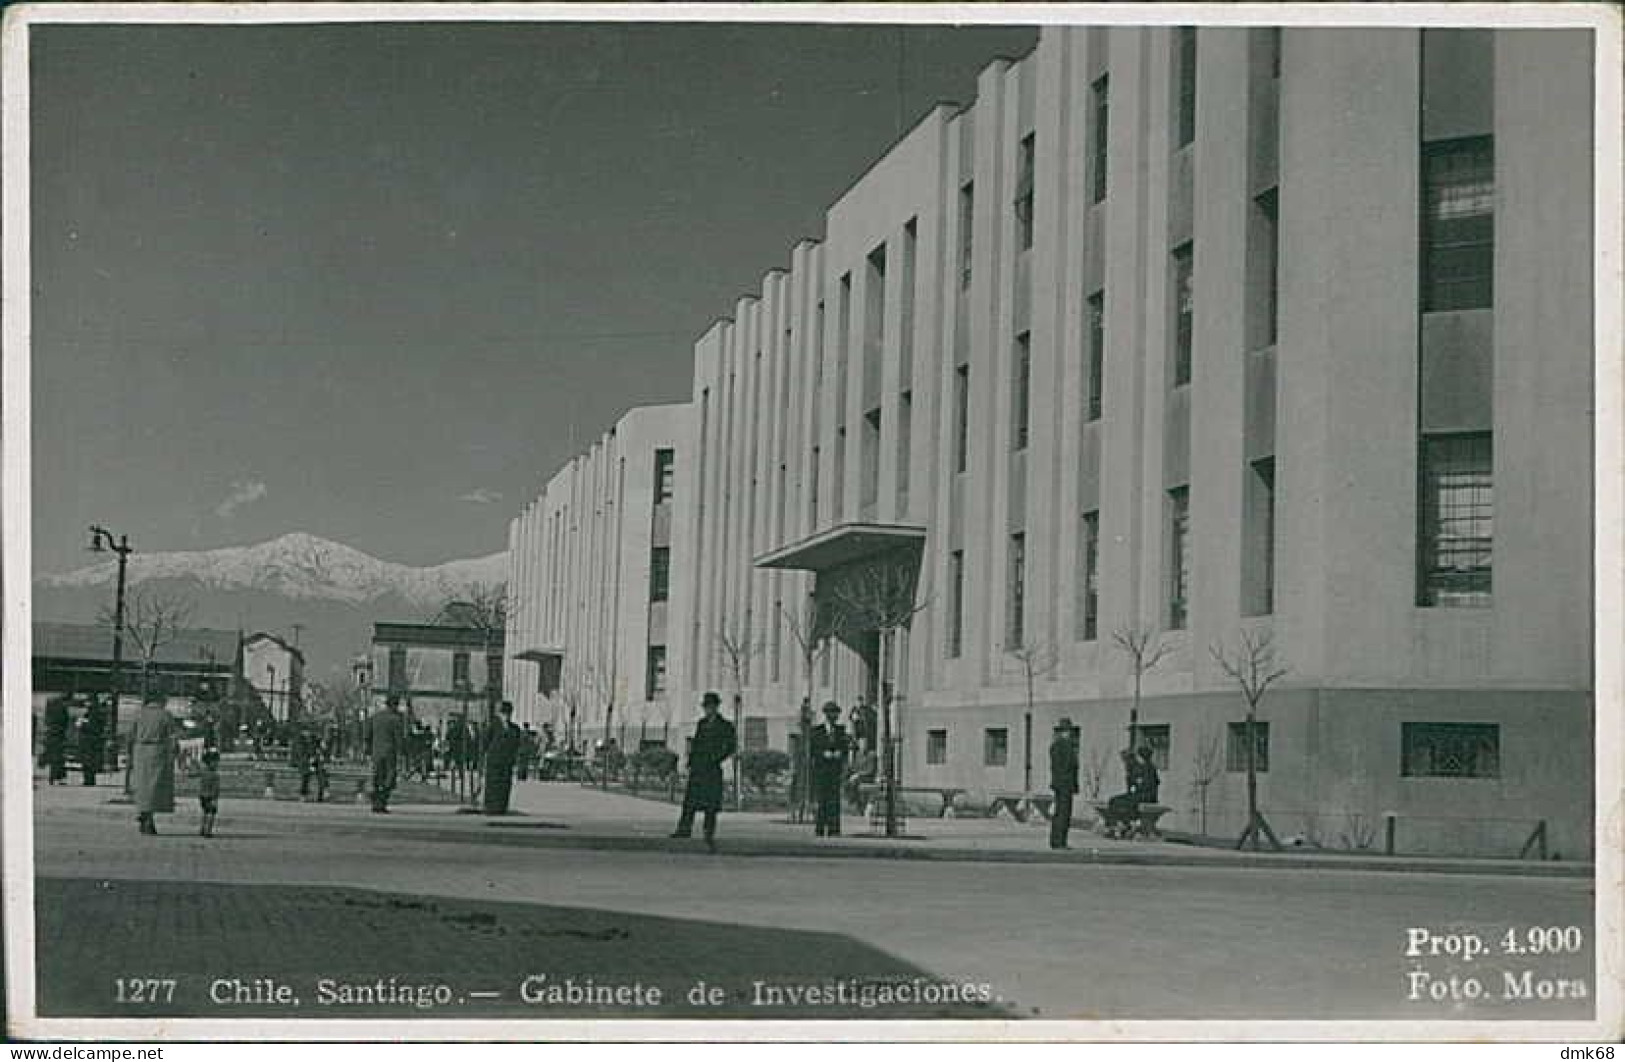 CHILE - SANTIAGO - GABINETE DE INVESTIGACIONES - FOTO MORA - RPPC POSTCARD 1930s (205) - Chili